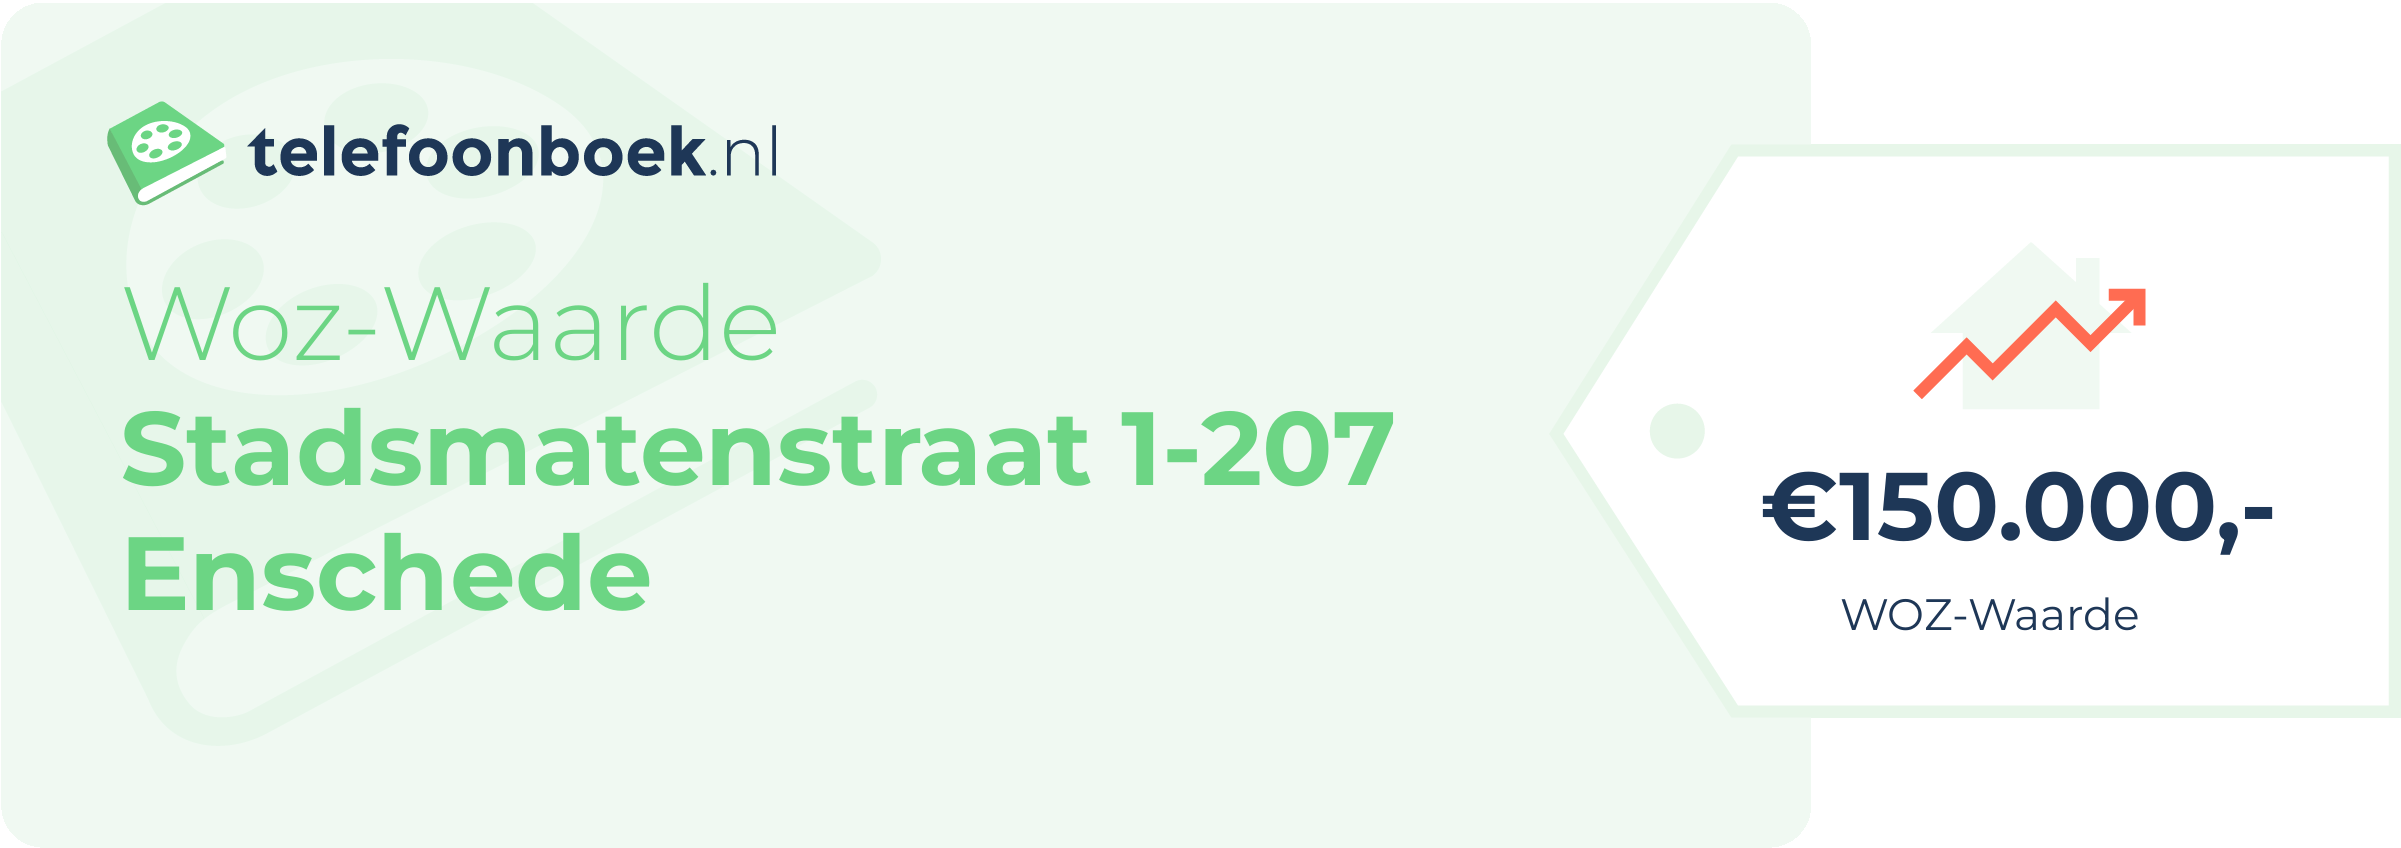 WOZ-waarde Stadsmatenstraat 1-207 Enschede